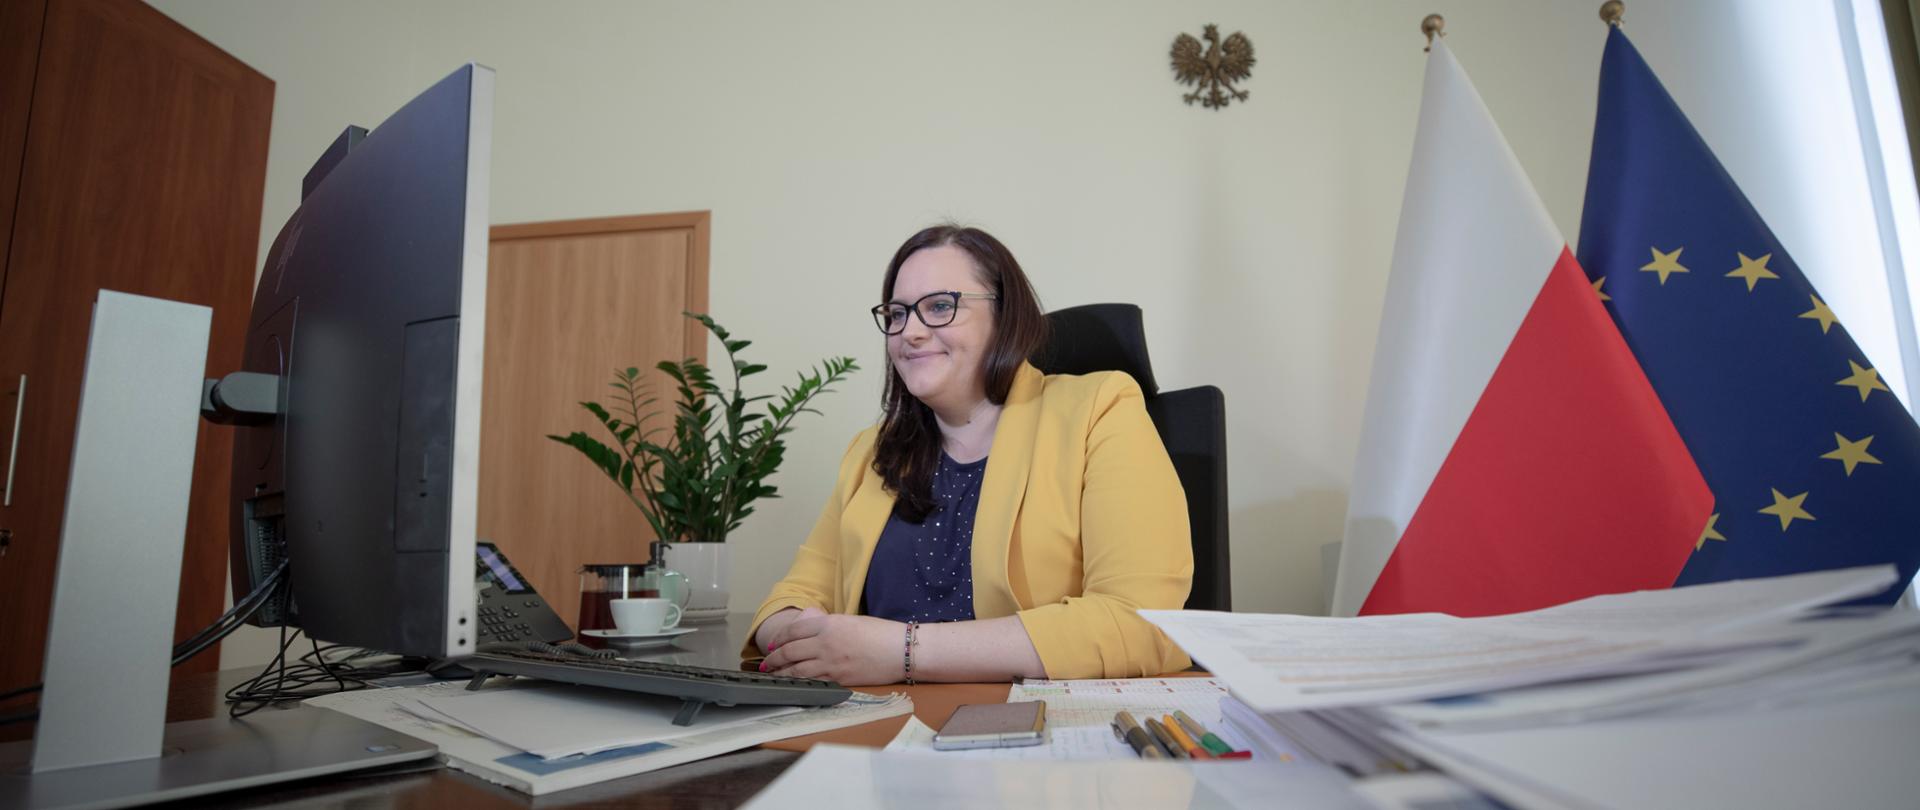 Wiceminister Małgorzata Jarosińska-Jedynak siedzi w swoim gabinecie przed monitorem. Na blacie biurka dokumenty. Z tyłu kwiat w doniczce i flagi PL i UE.